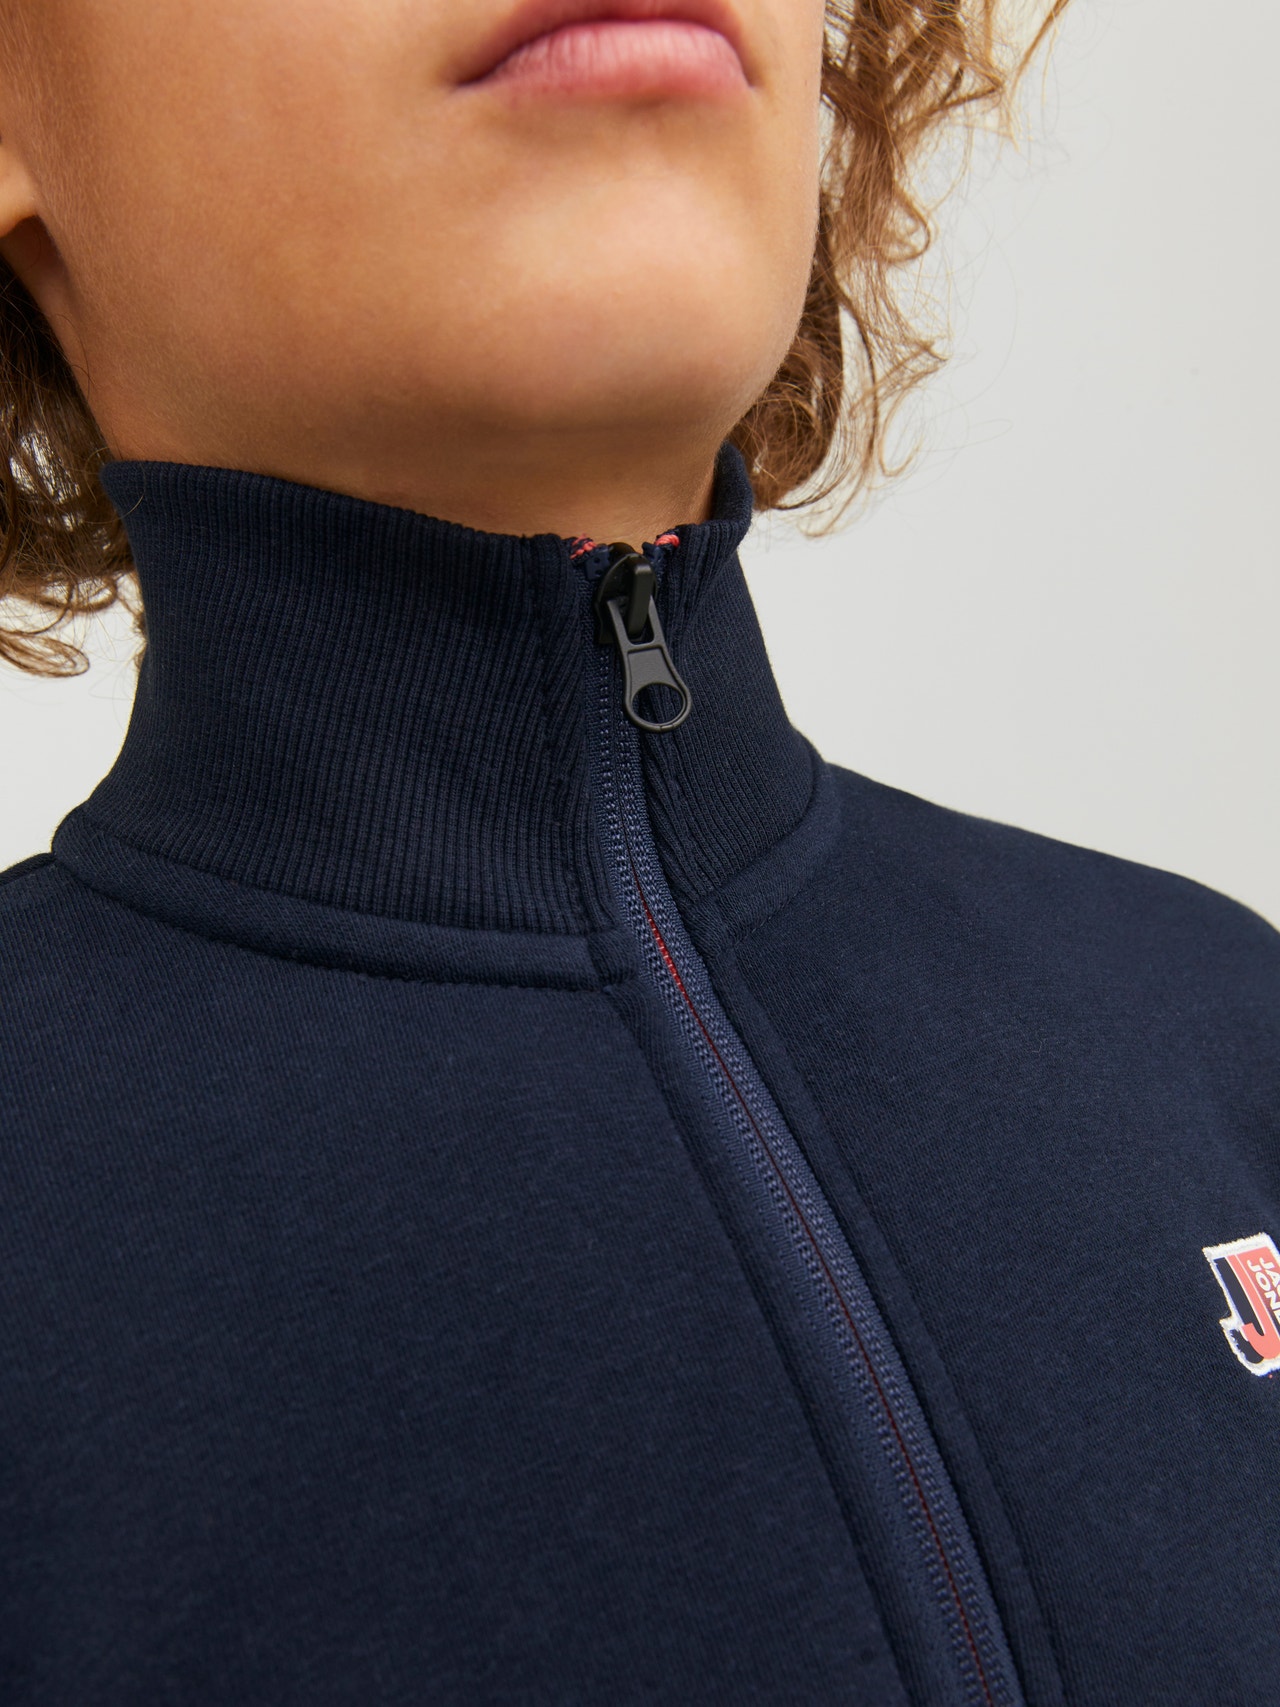 Jack & Jones Logo Zip Sweatshirt For boys -Navy Blazer - 12230782